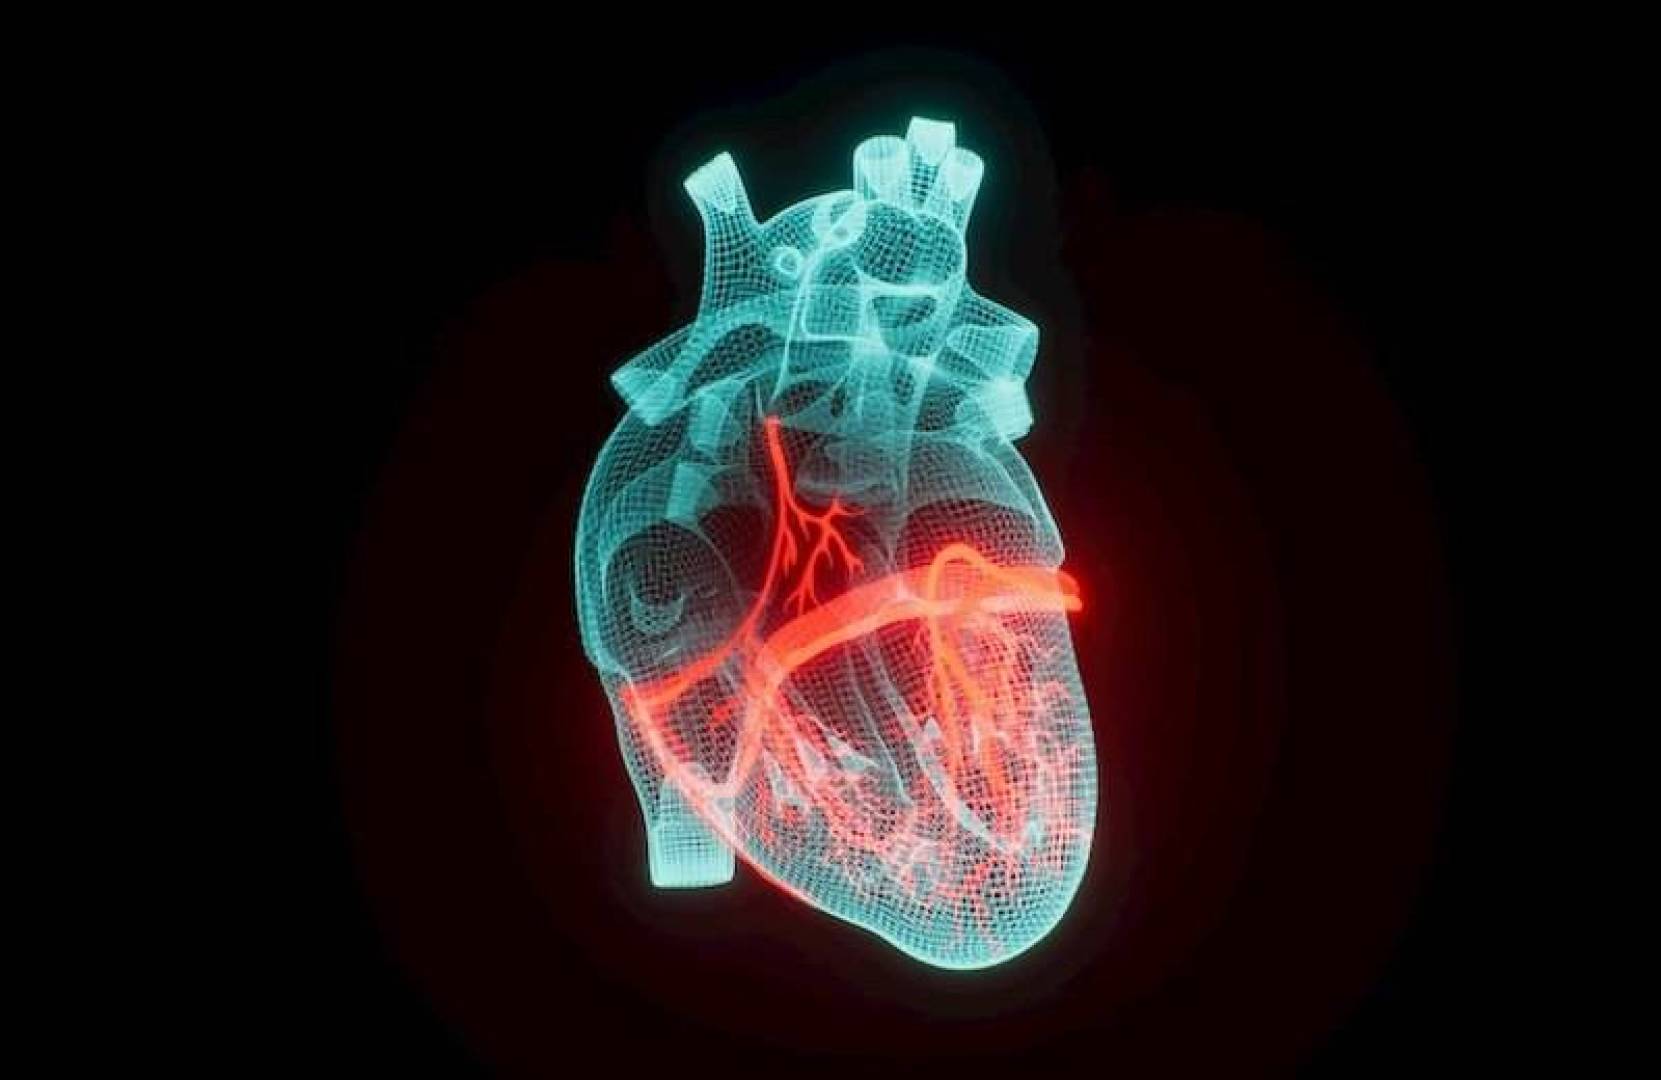 استراتيجيات فعالة لإدارة فشل القلب الاحتقاني وتحسين الحياة